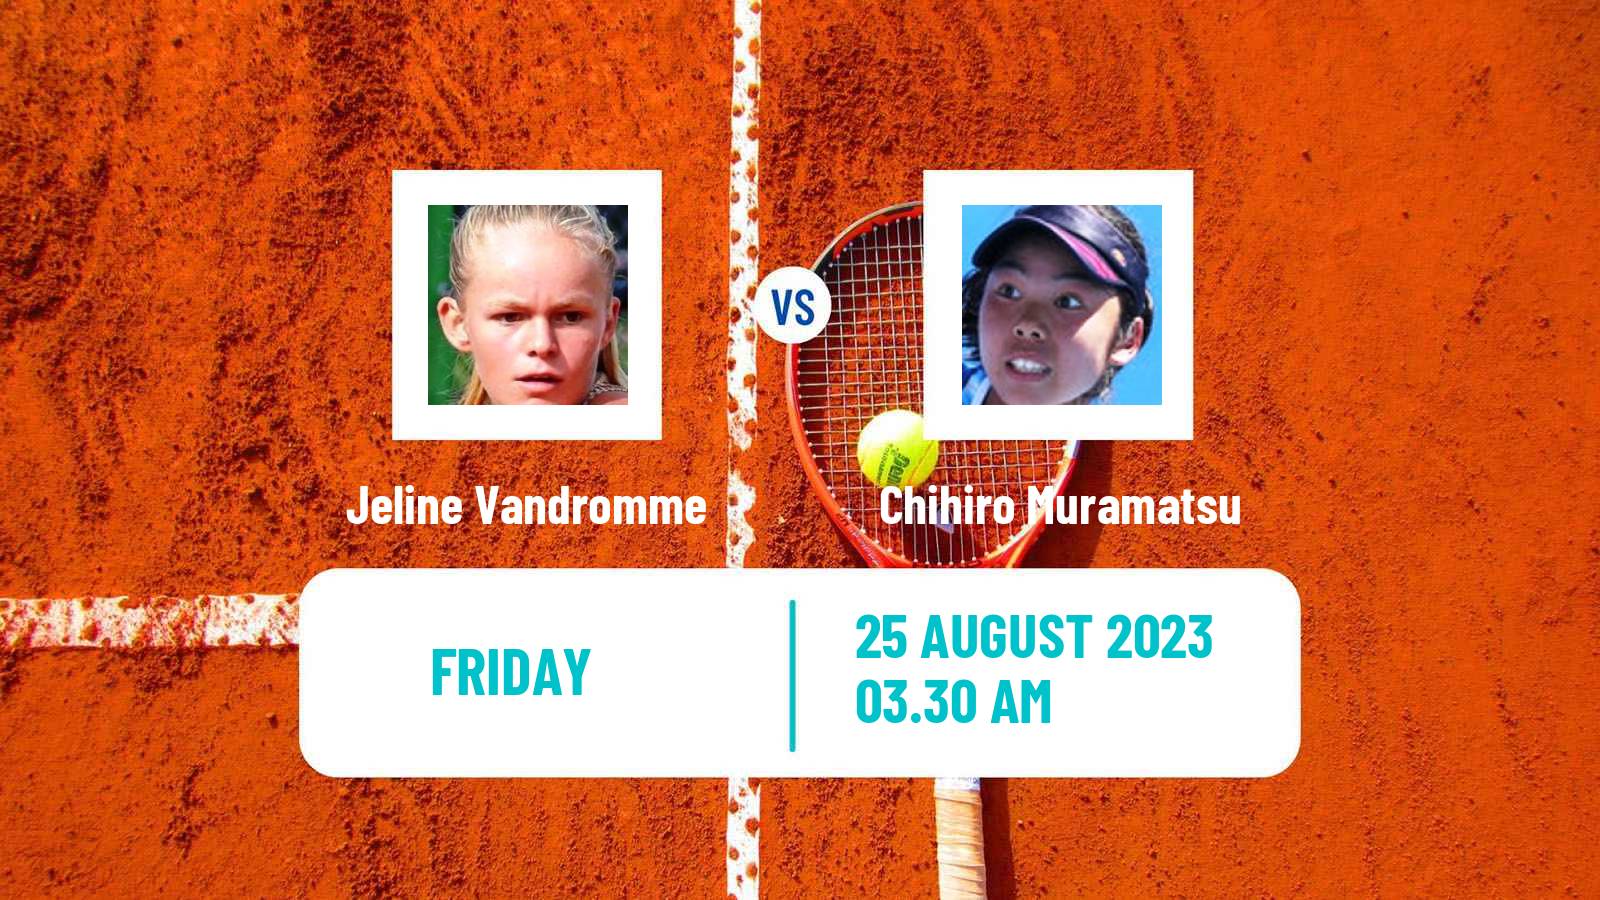 Tennis ITF W15 Wanfercee Baulet Women Jeline Vandromme - Chihiro Muramatsu